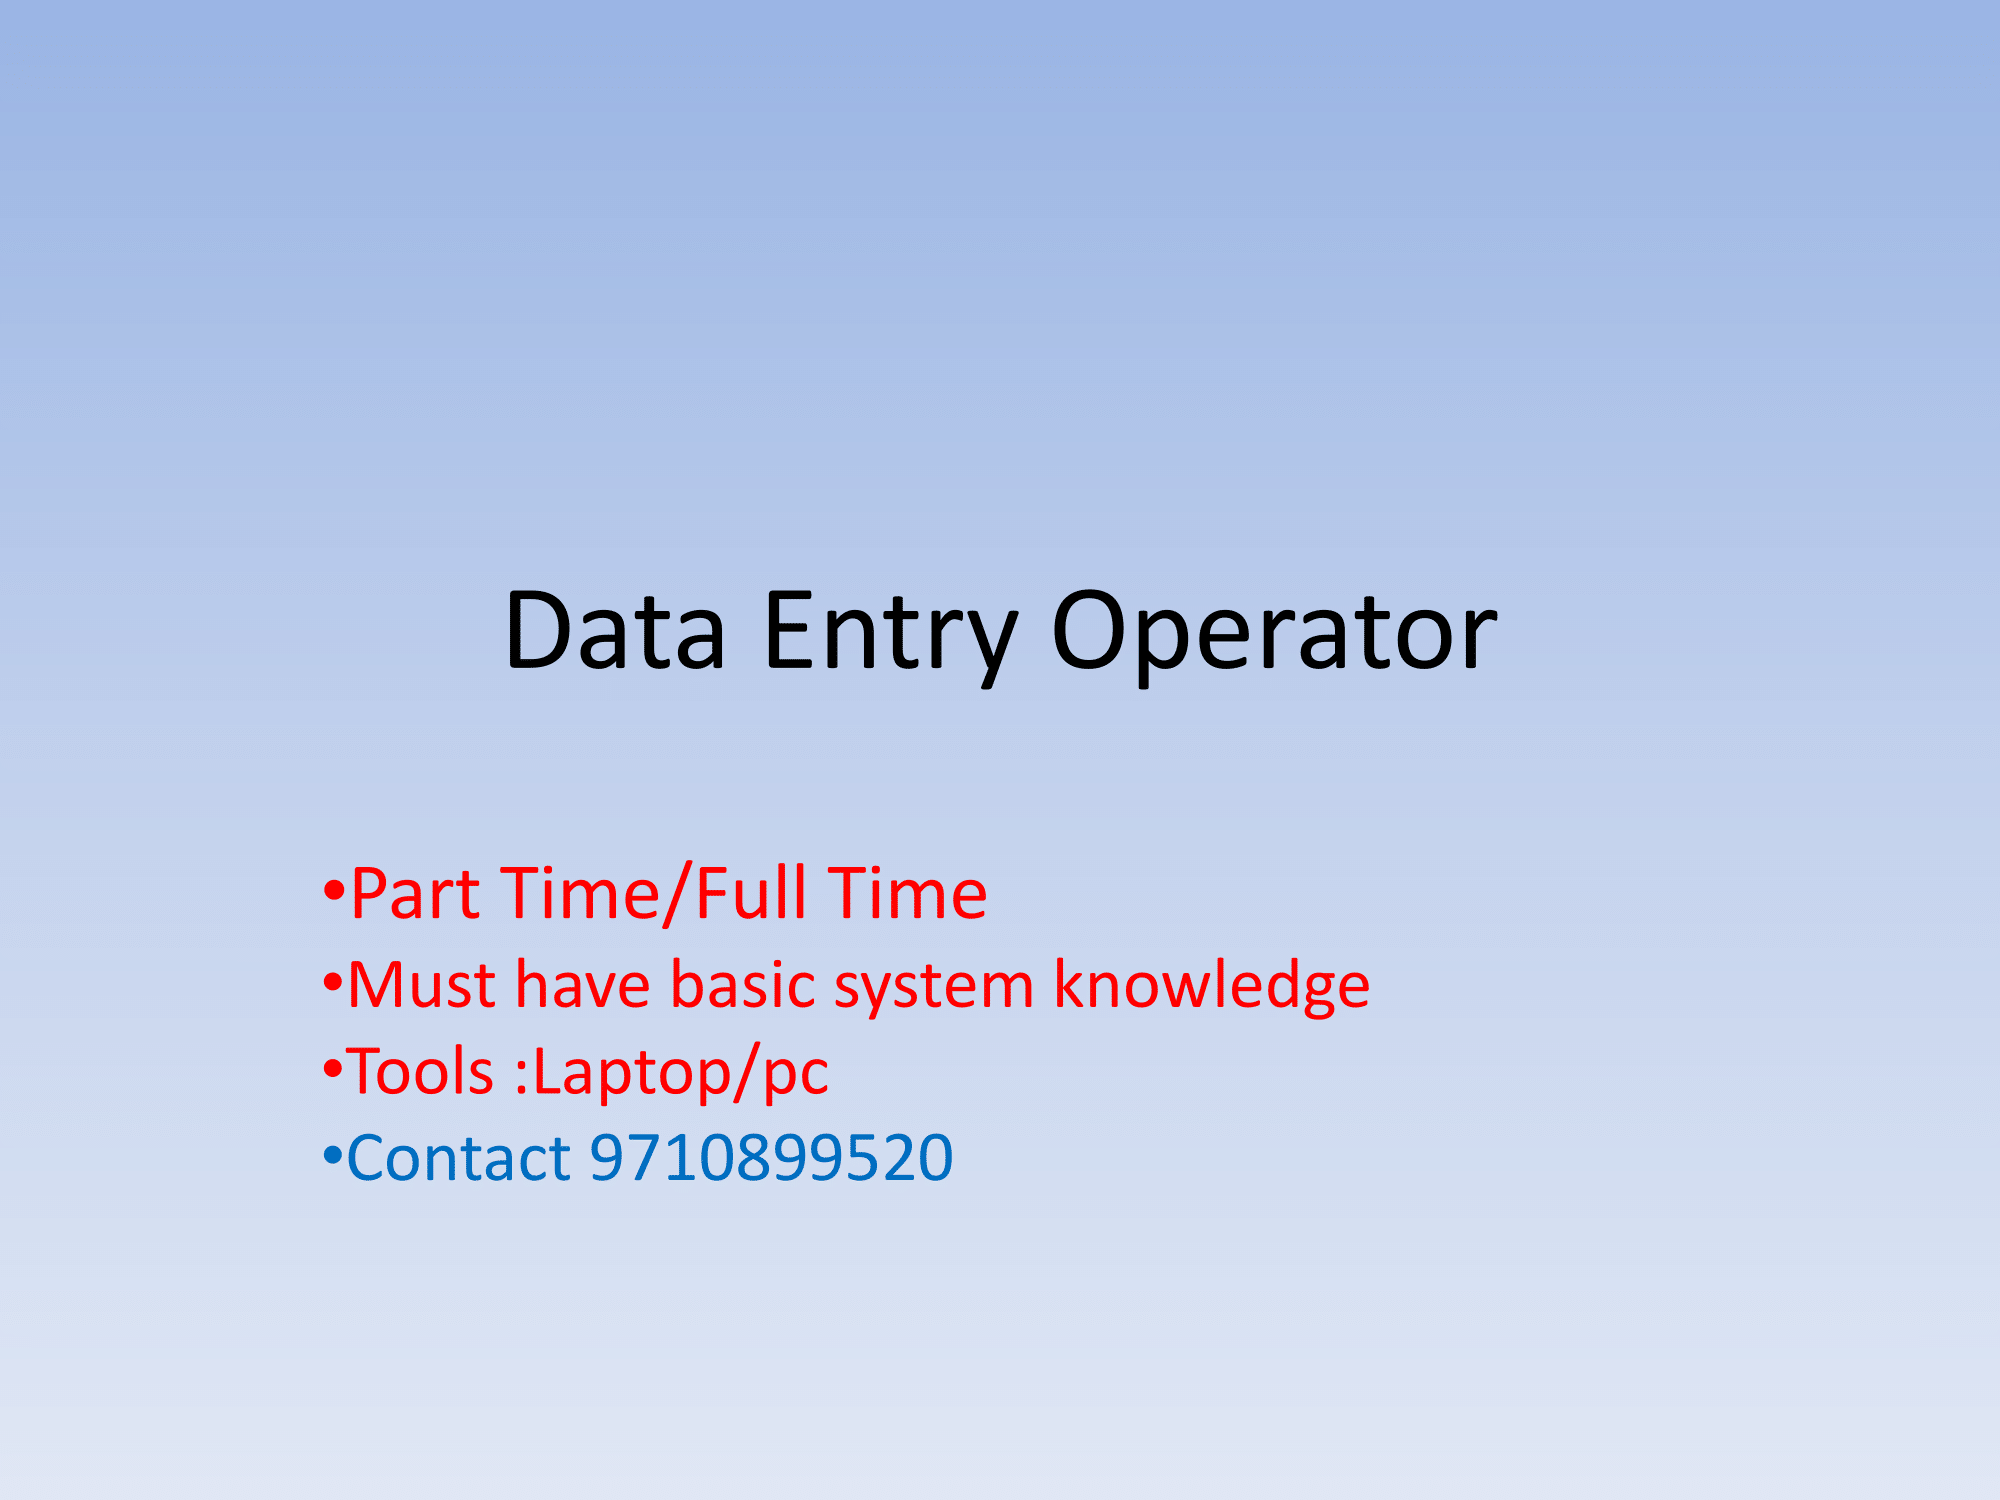 Home Based Data entry Job